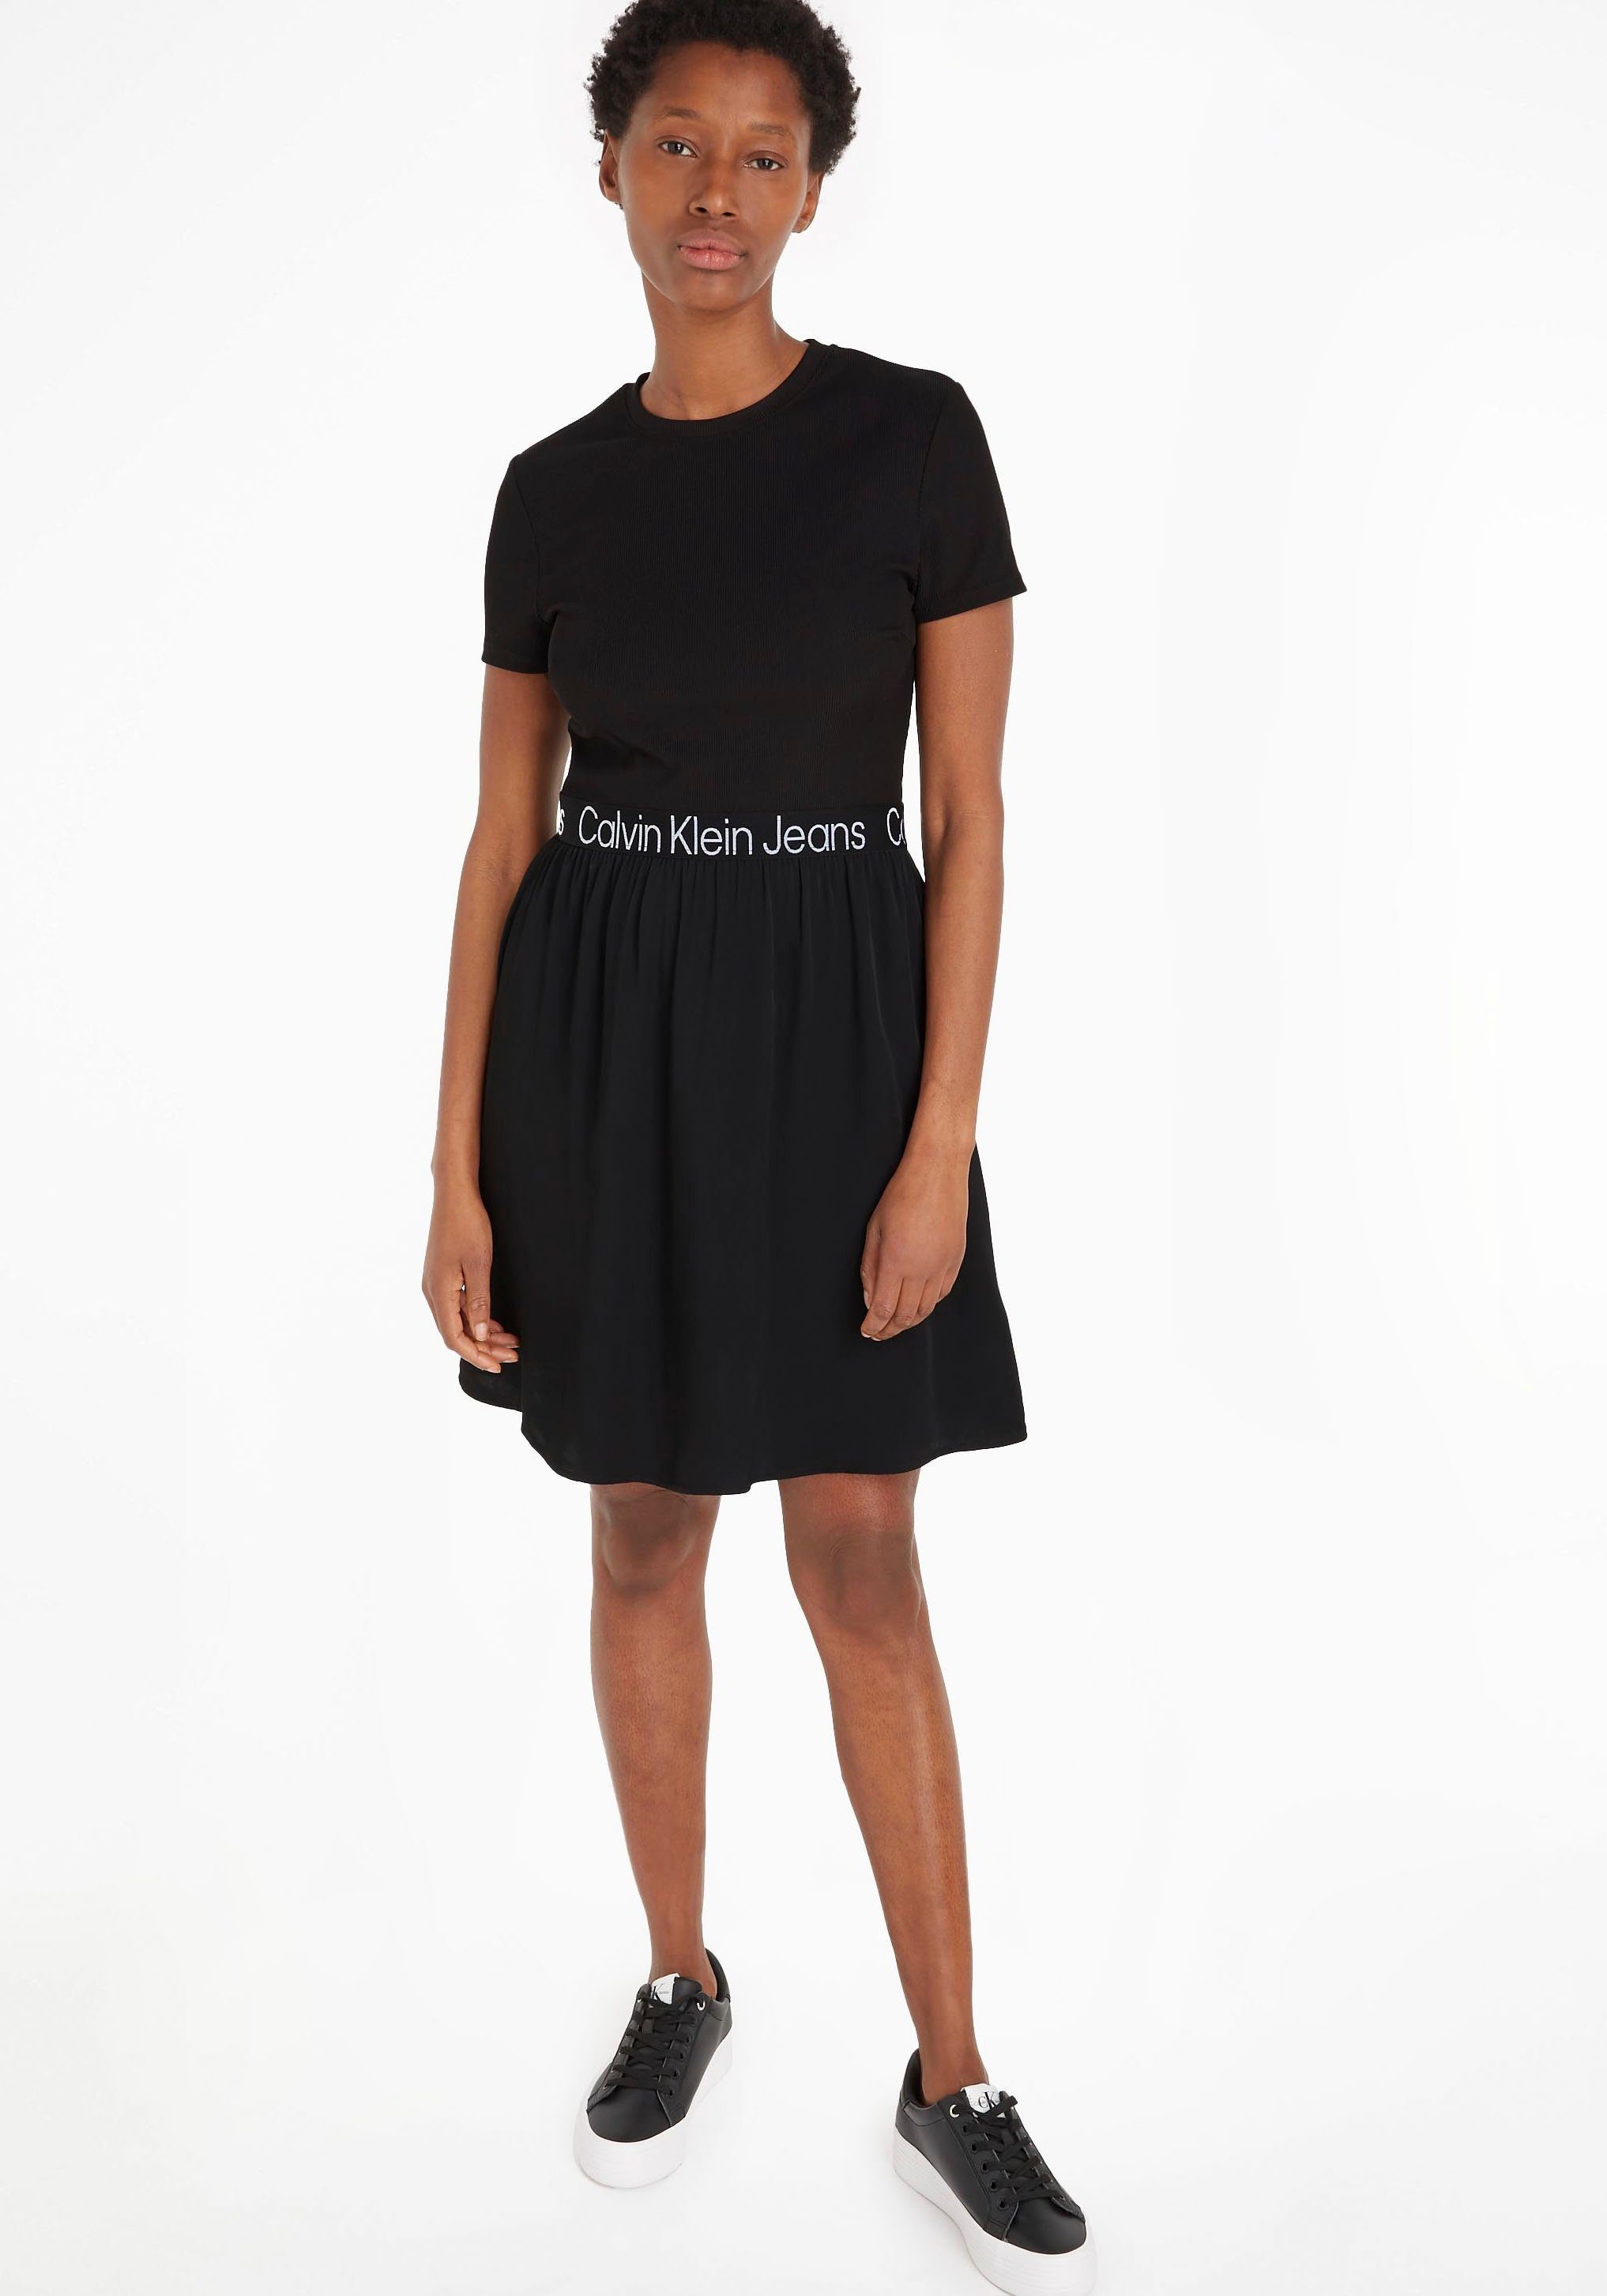 Jeans 2-in-1-Kleid schwarz Klein Calvin im Materialmix